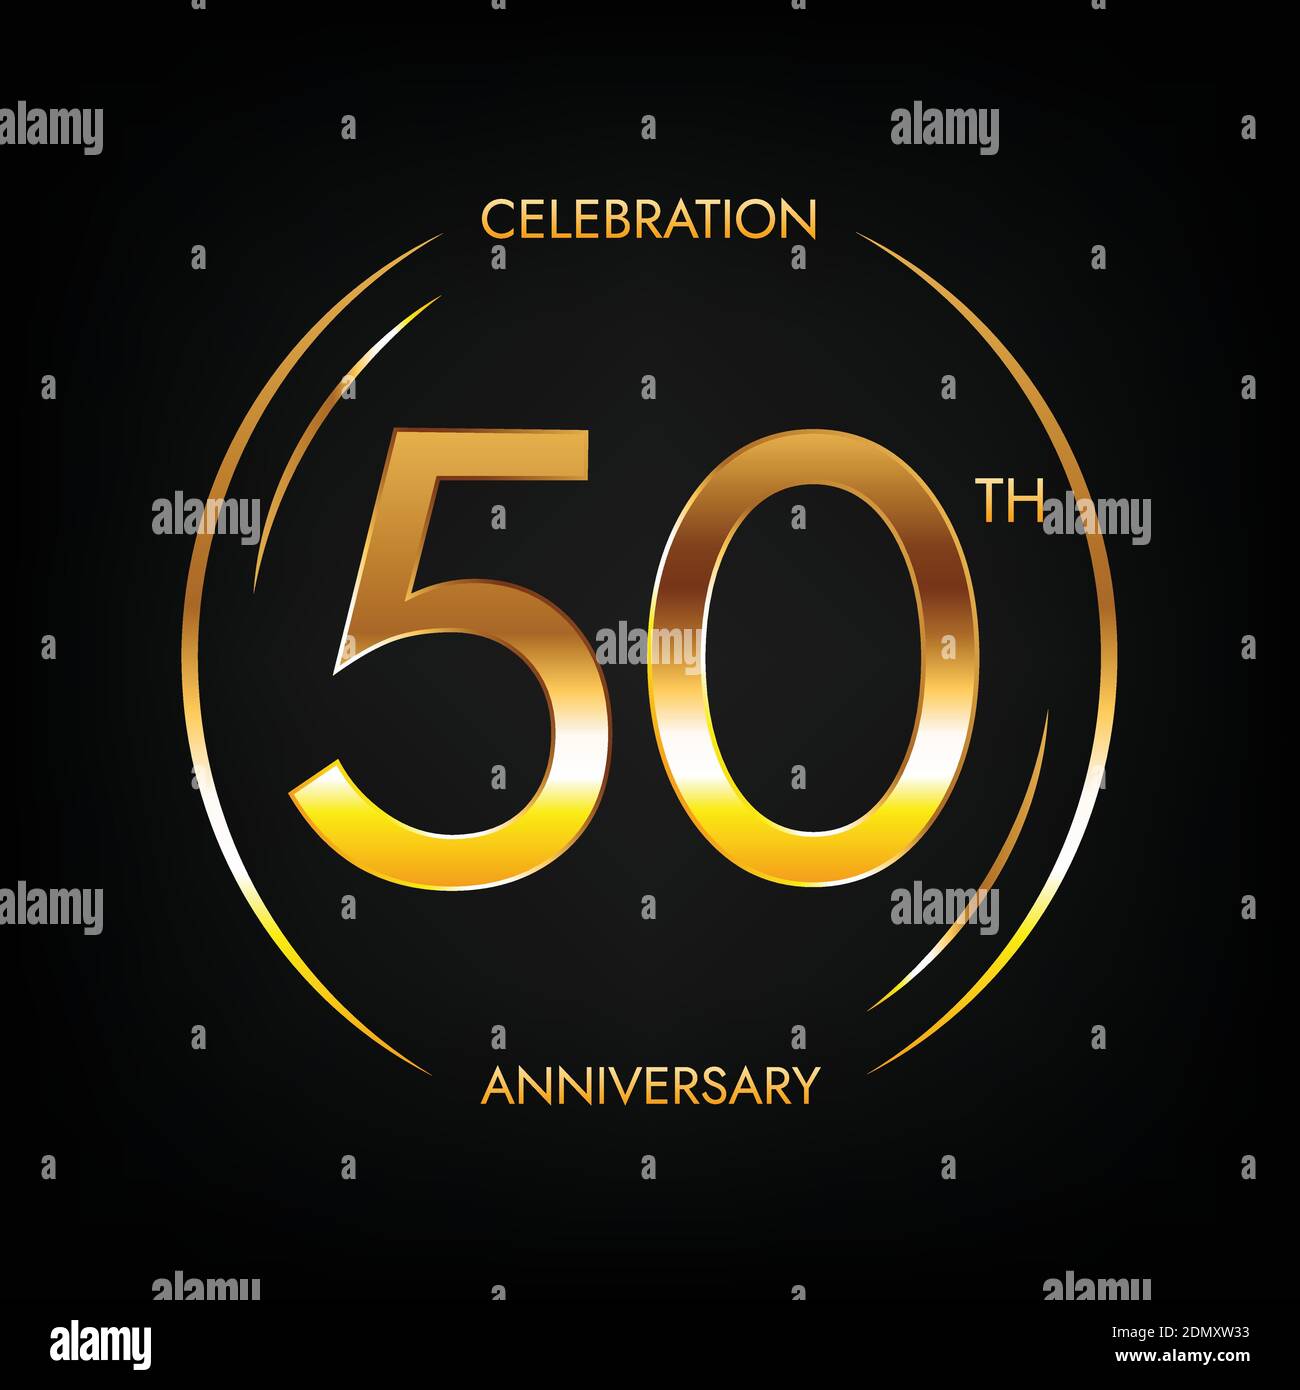 https://c8.alamy.com/compes/2dmxw33/50-aniversario-cincuenta-anos-de-fiesta-de-cumpleanos-banner-en-color-dorado-brillante-logotipo-circular-con-diseno-de-numero-elegante-2dmxw33.jpg